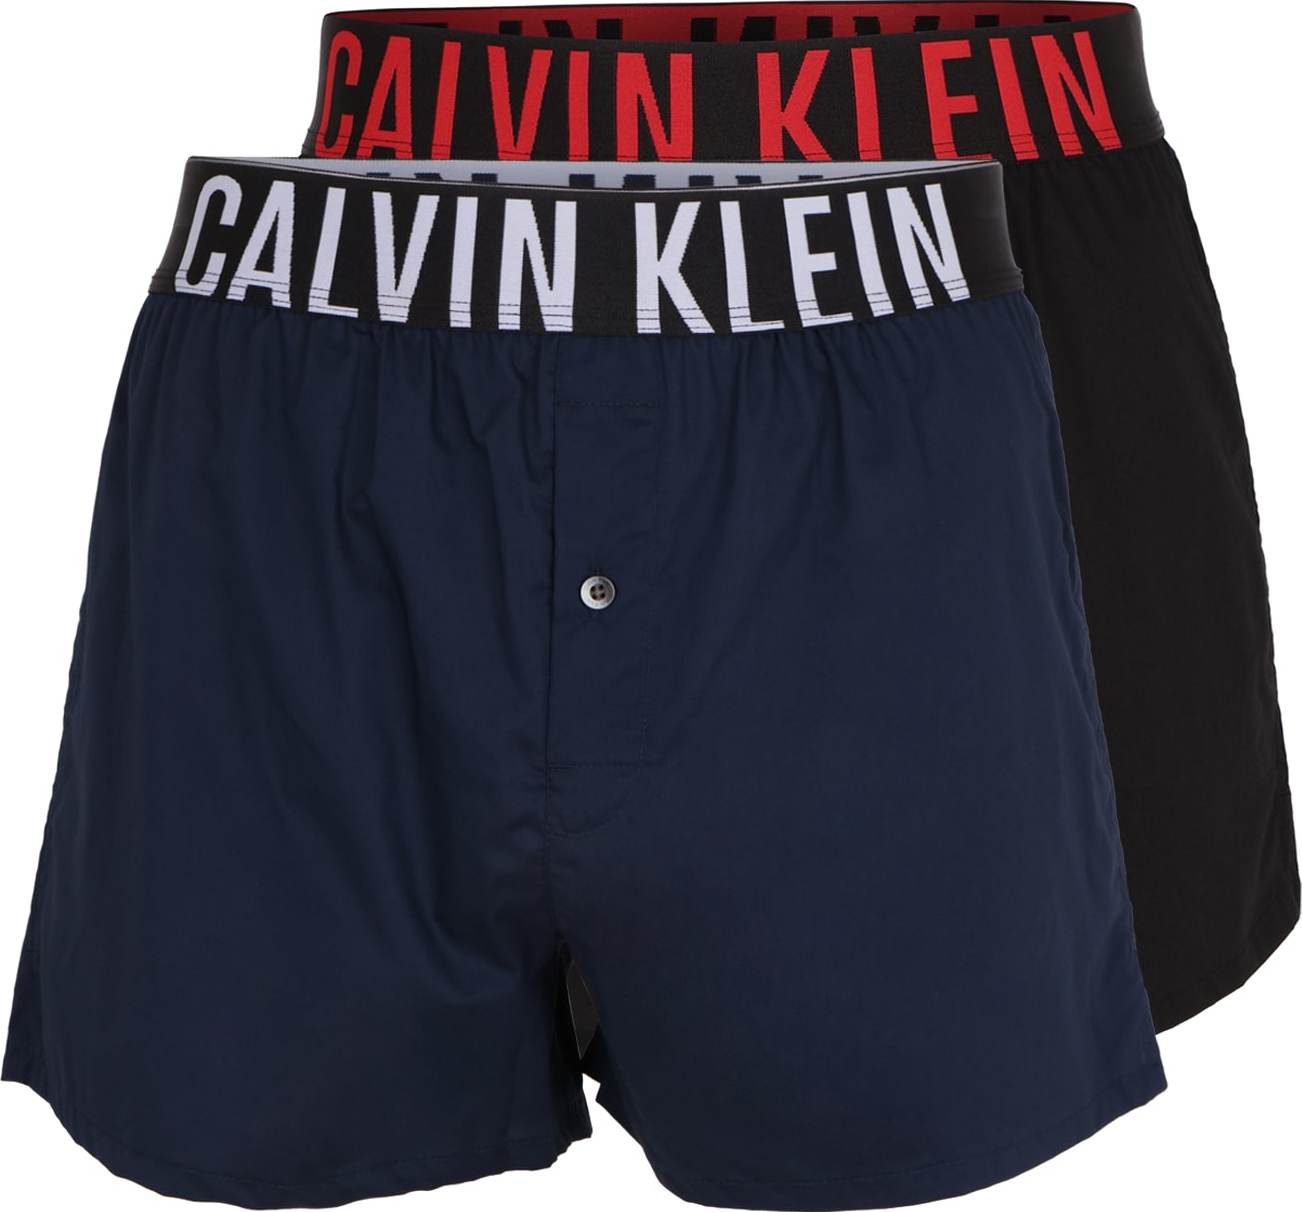 Calvin Klein Underwear Boxerky marine modrá / červená / černá / bílá